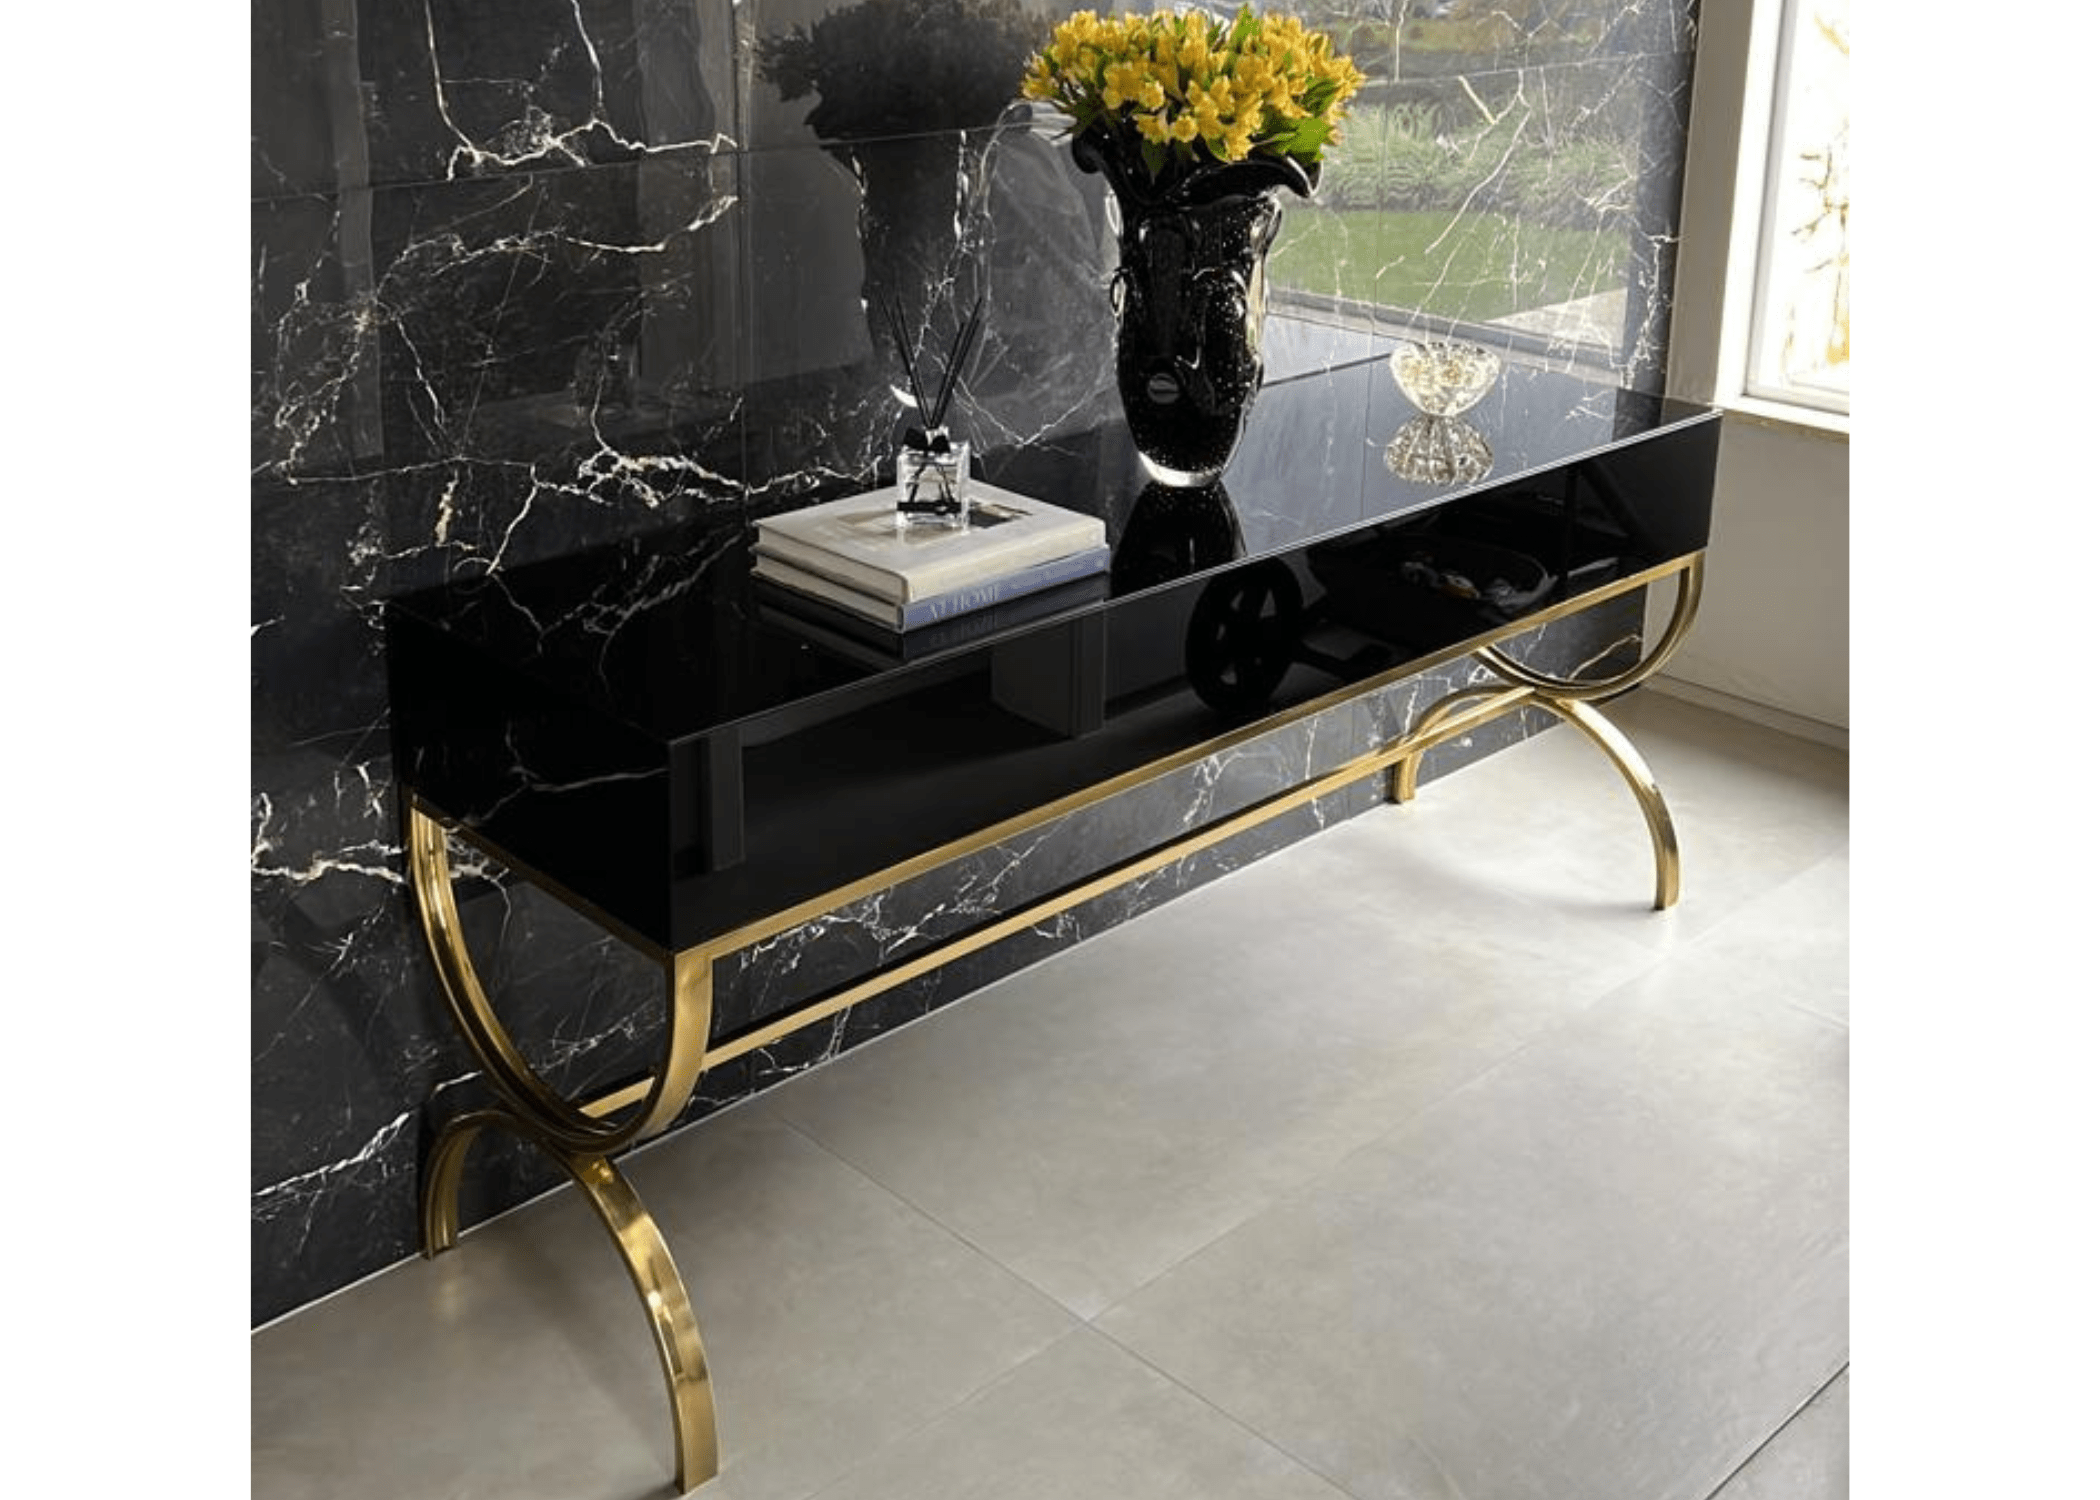 Aparador Dourado: Luxo e sofisticação em um móvel deslumbrante.